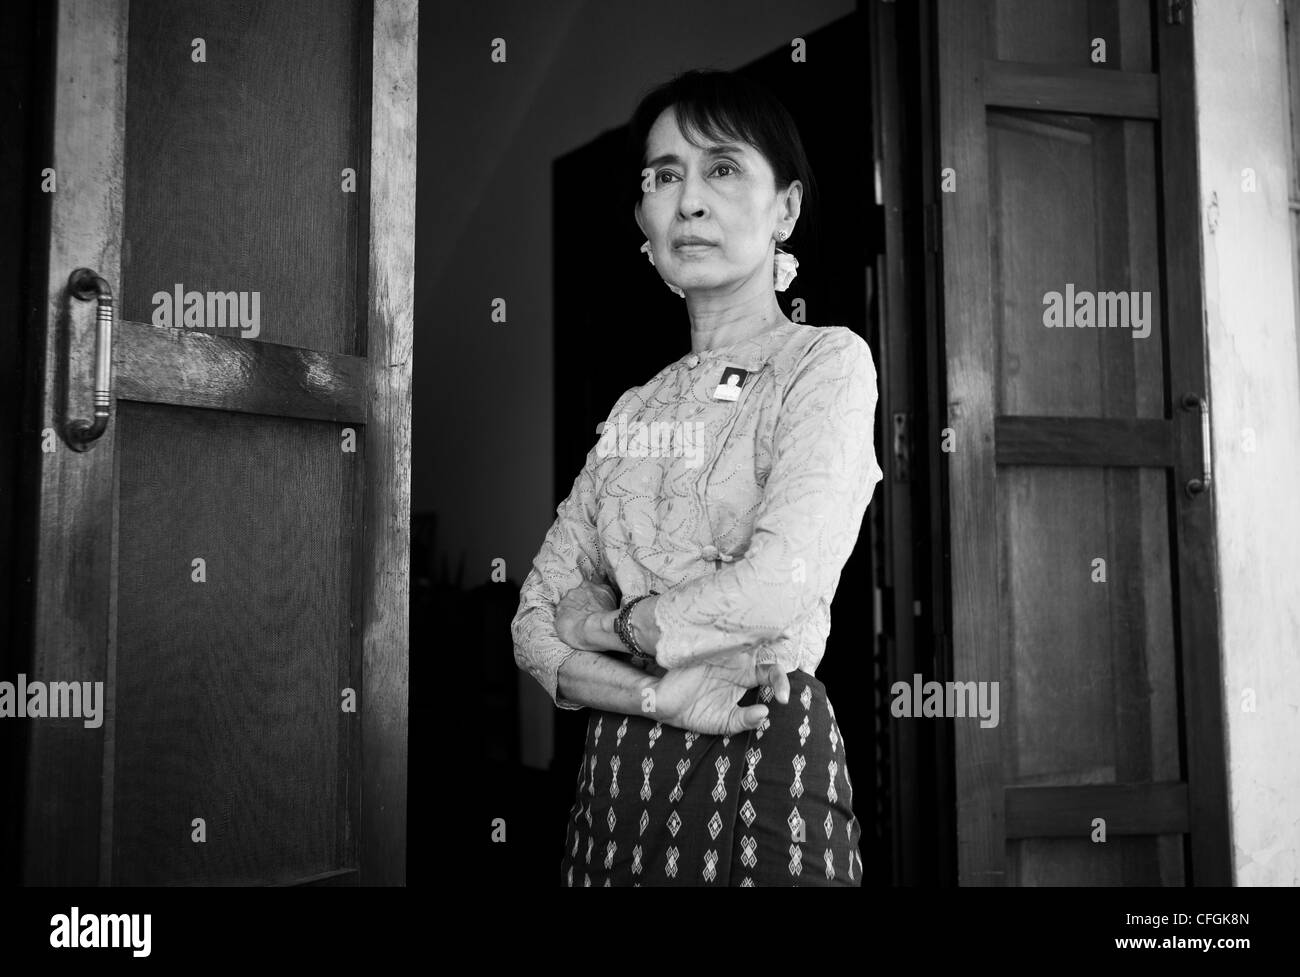 Aung San Suu Kyi, chancelier de l'État Le gouvernement du Myanmar et le chef de la Ligue nationale pour la démocratie (LND) à son domicile à Yangon au Myanmar, Birmanie Banque D'Images